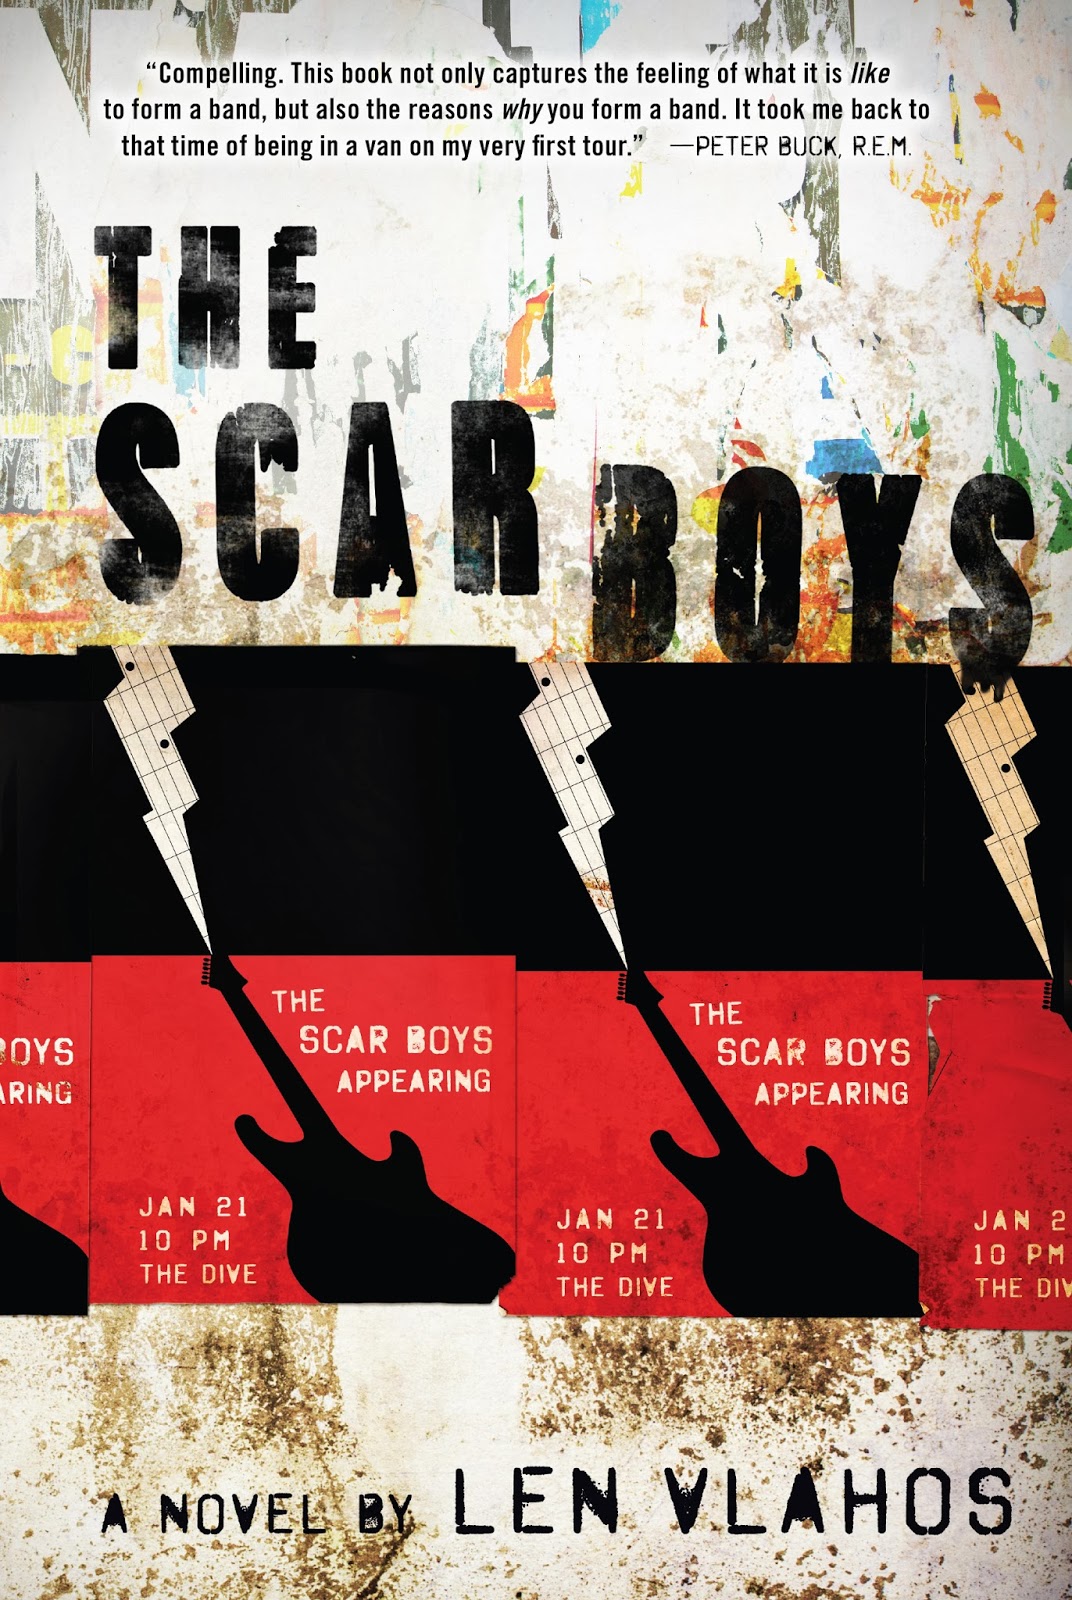 New Voice: Len Vlahos on The Scar Boys